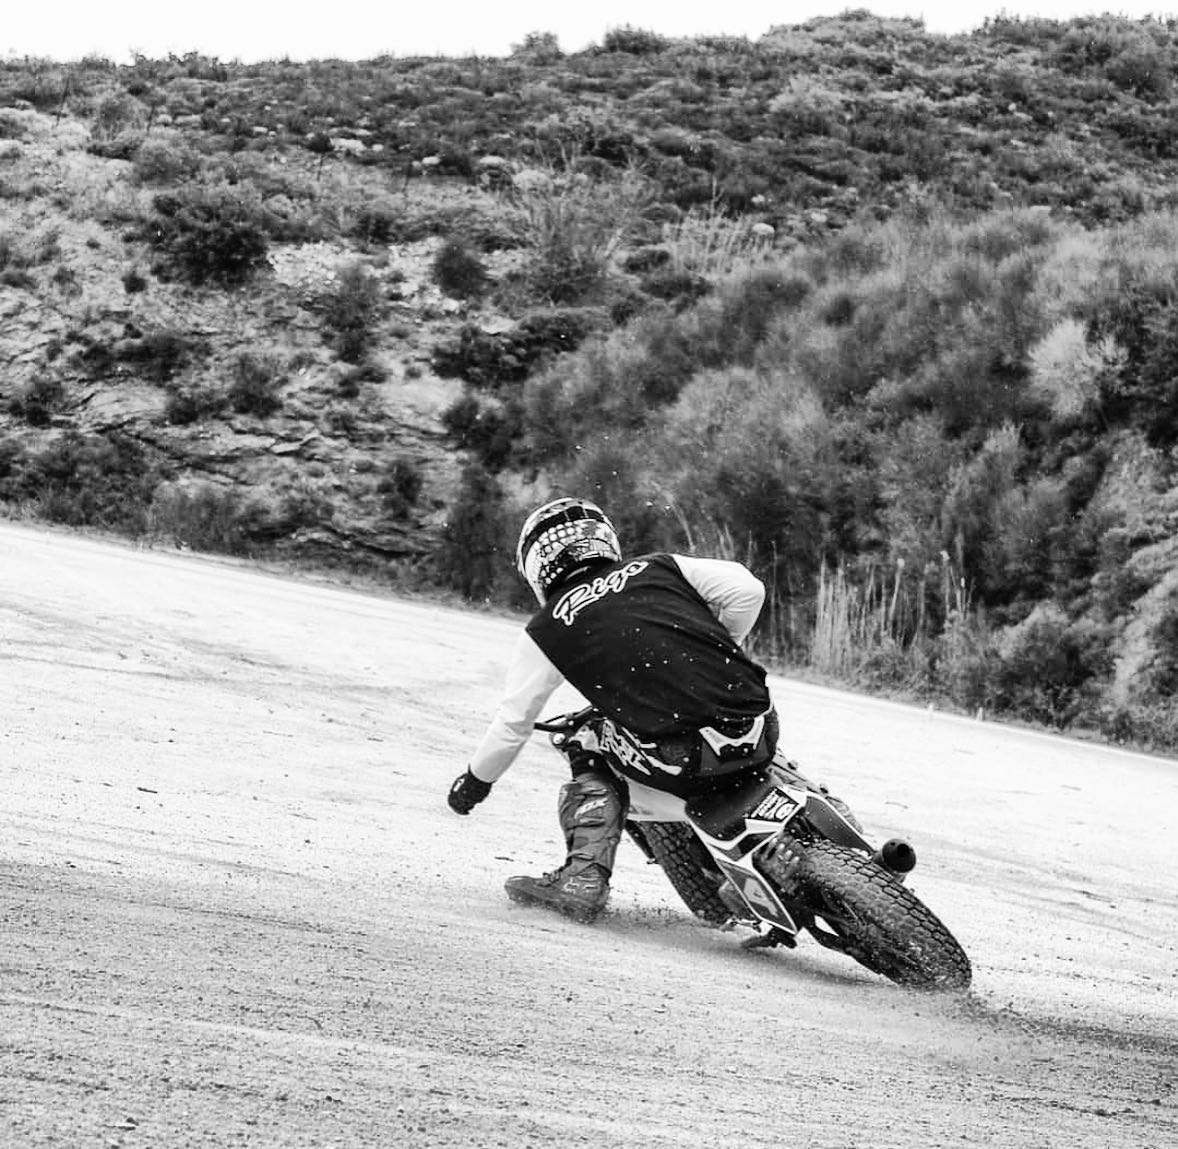 Finaly it’s FRIDAY !! Ready to ride ? 🔥
@antreas_rigo
—
#sundaymotors #flattrack #moto #motorcycle #ycf